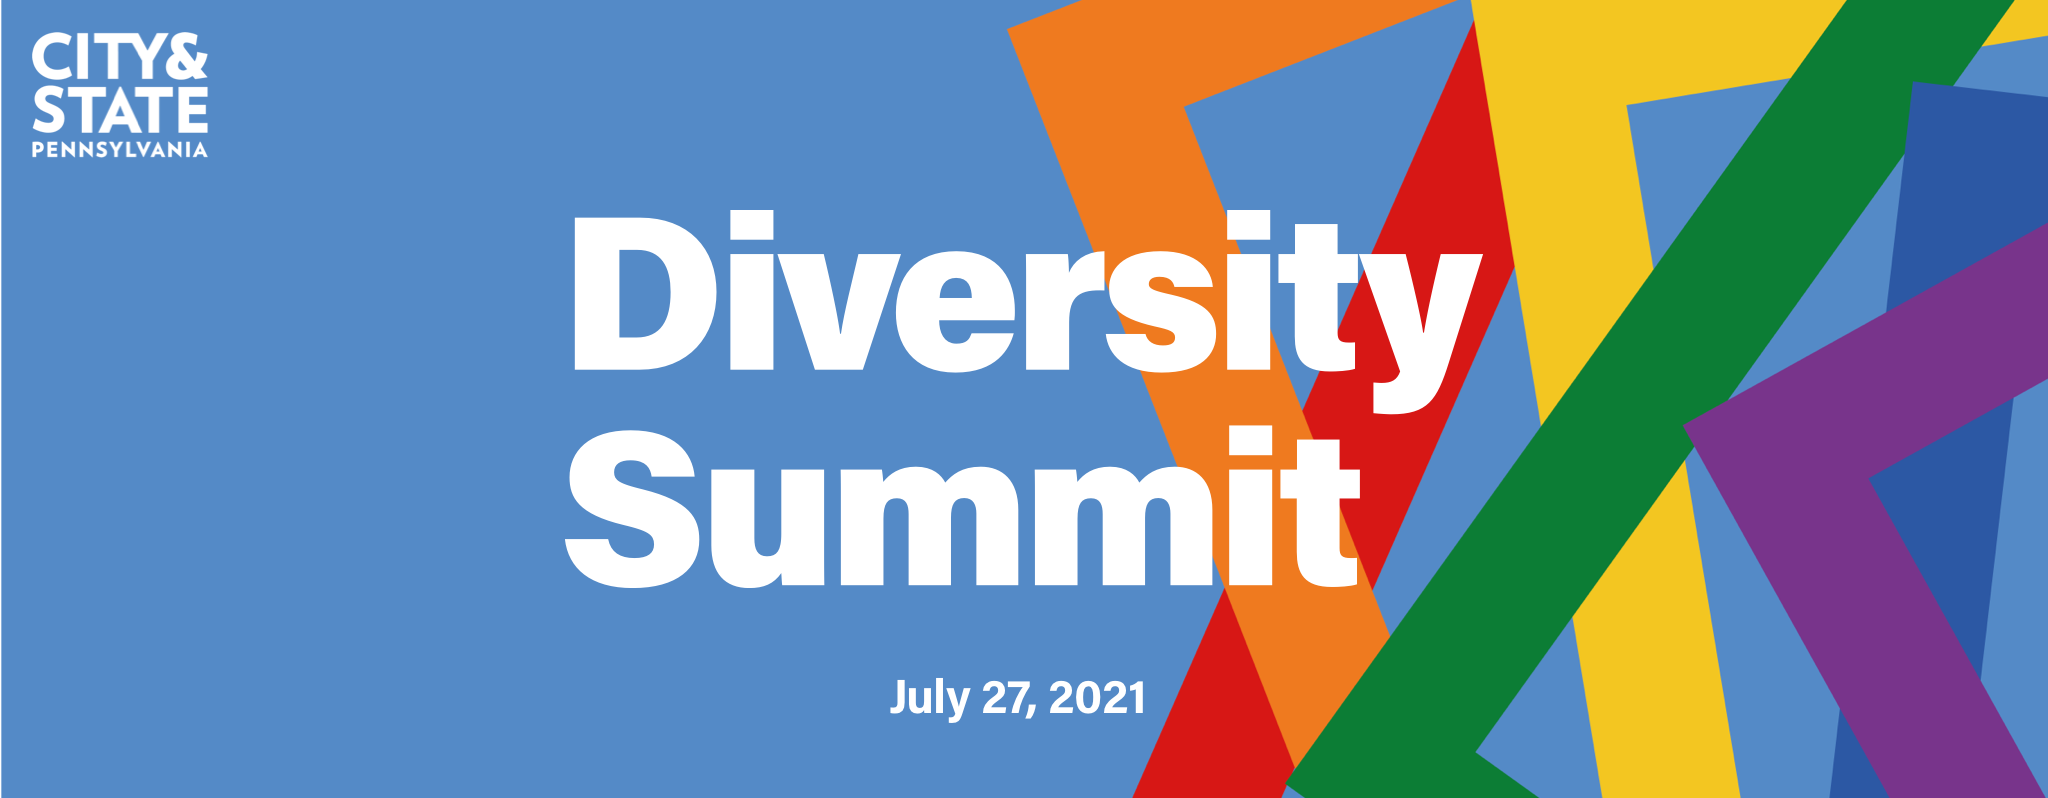 Diversity Summit